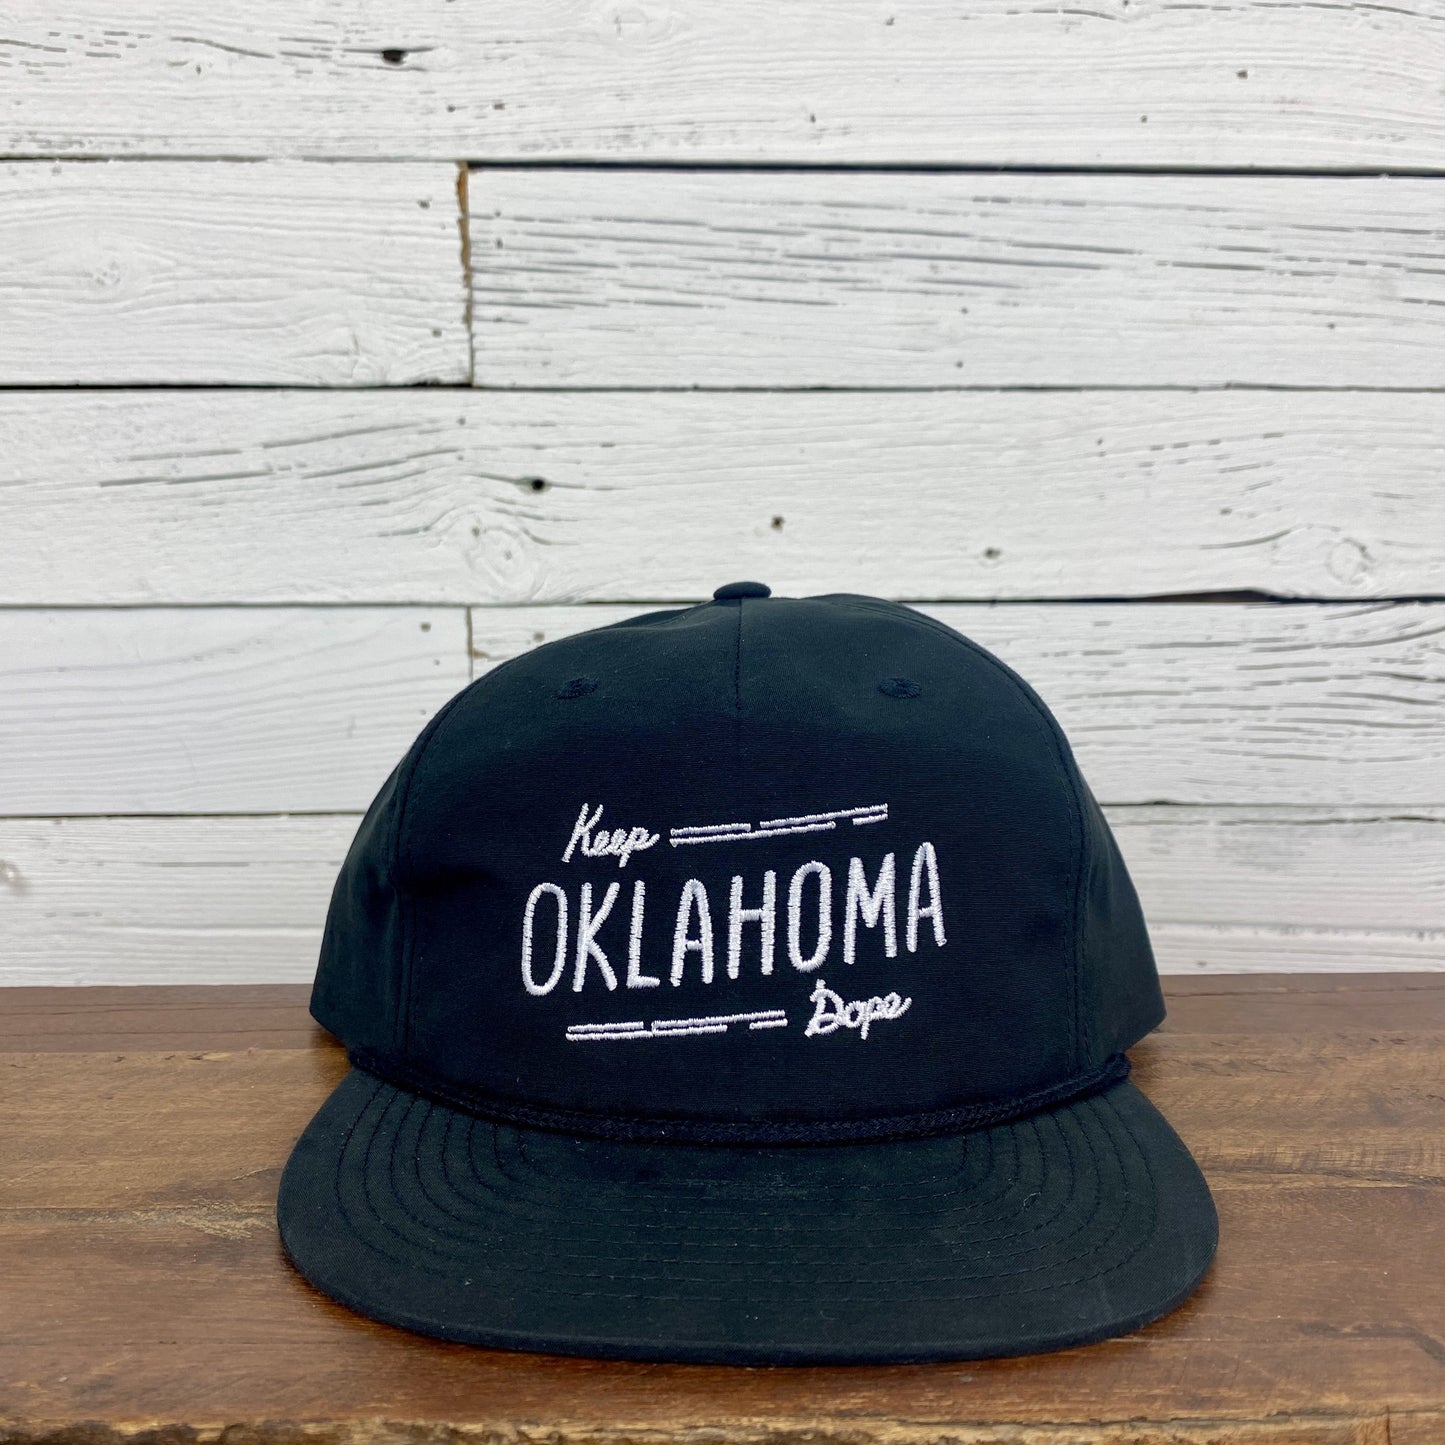 Keep Oklahoma Dope Hat - Black